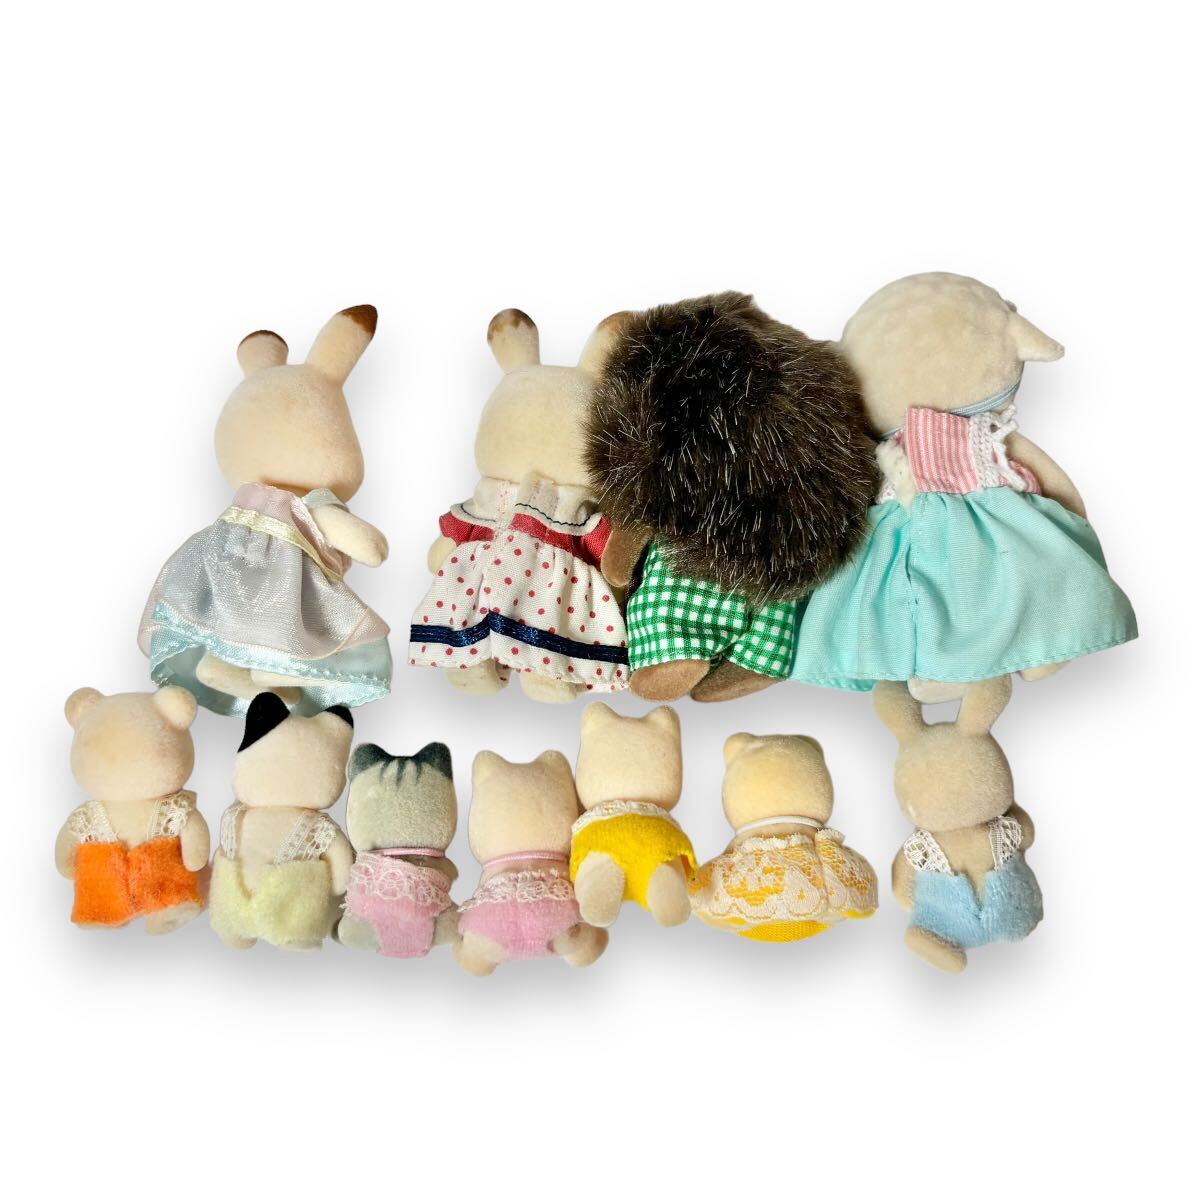 シルバニアファミリー 人形 赤ちゃん 洋服付き まとめ売り 11体セット うさぎ ハリネズミ 羊 猫 リス コレクション 送料無料の画像5